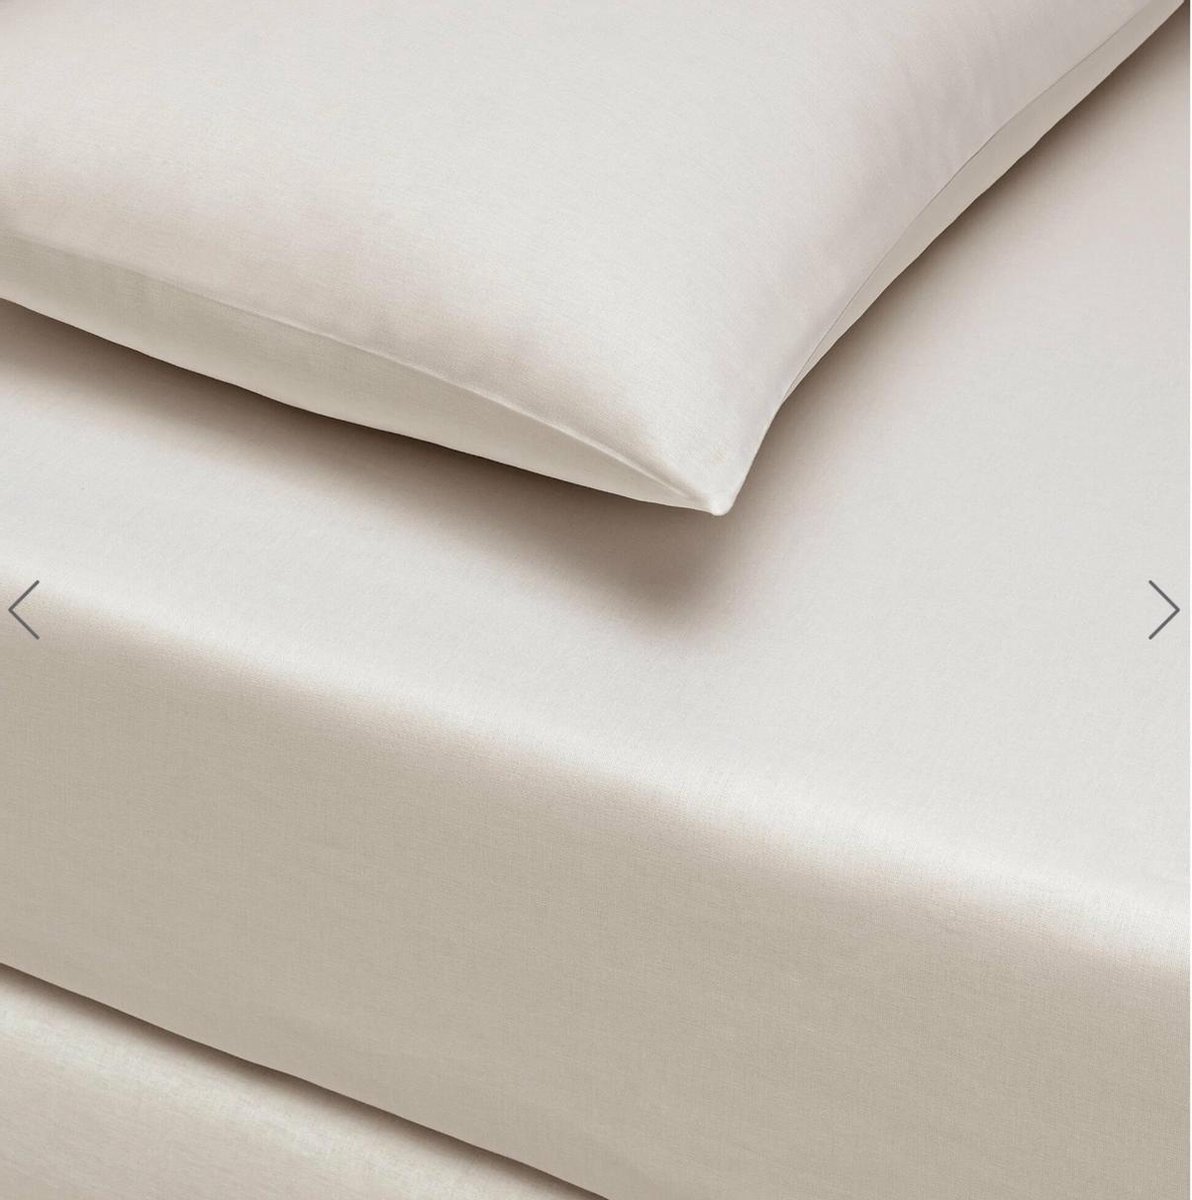 Linens - Basic Hoeslakenset (laken + 2 kussenslopen) Super King - 180x200 cm - %100 Cotton - Latte Brown